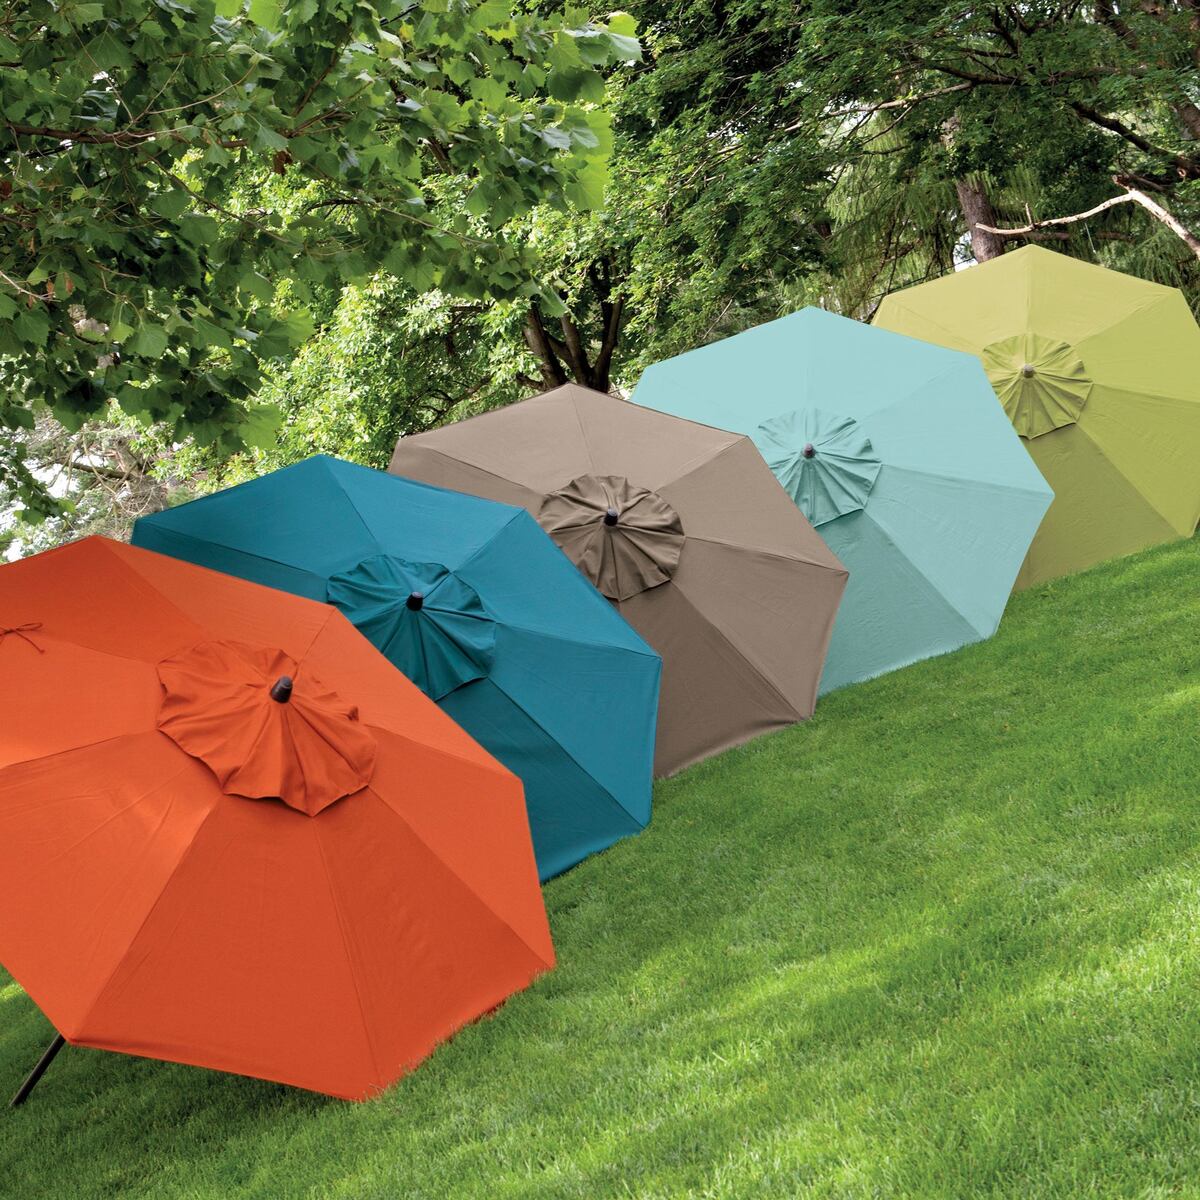 What Color Outdoor Umbrella Should I Get